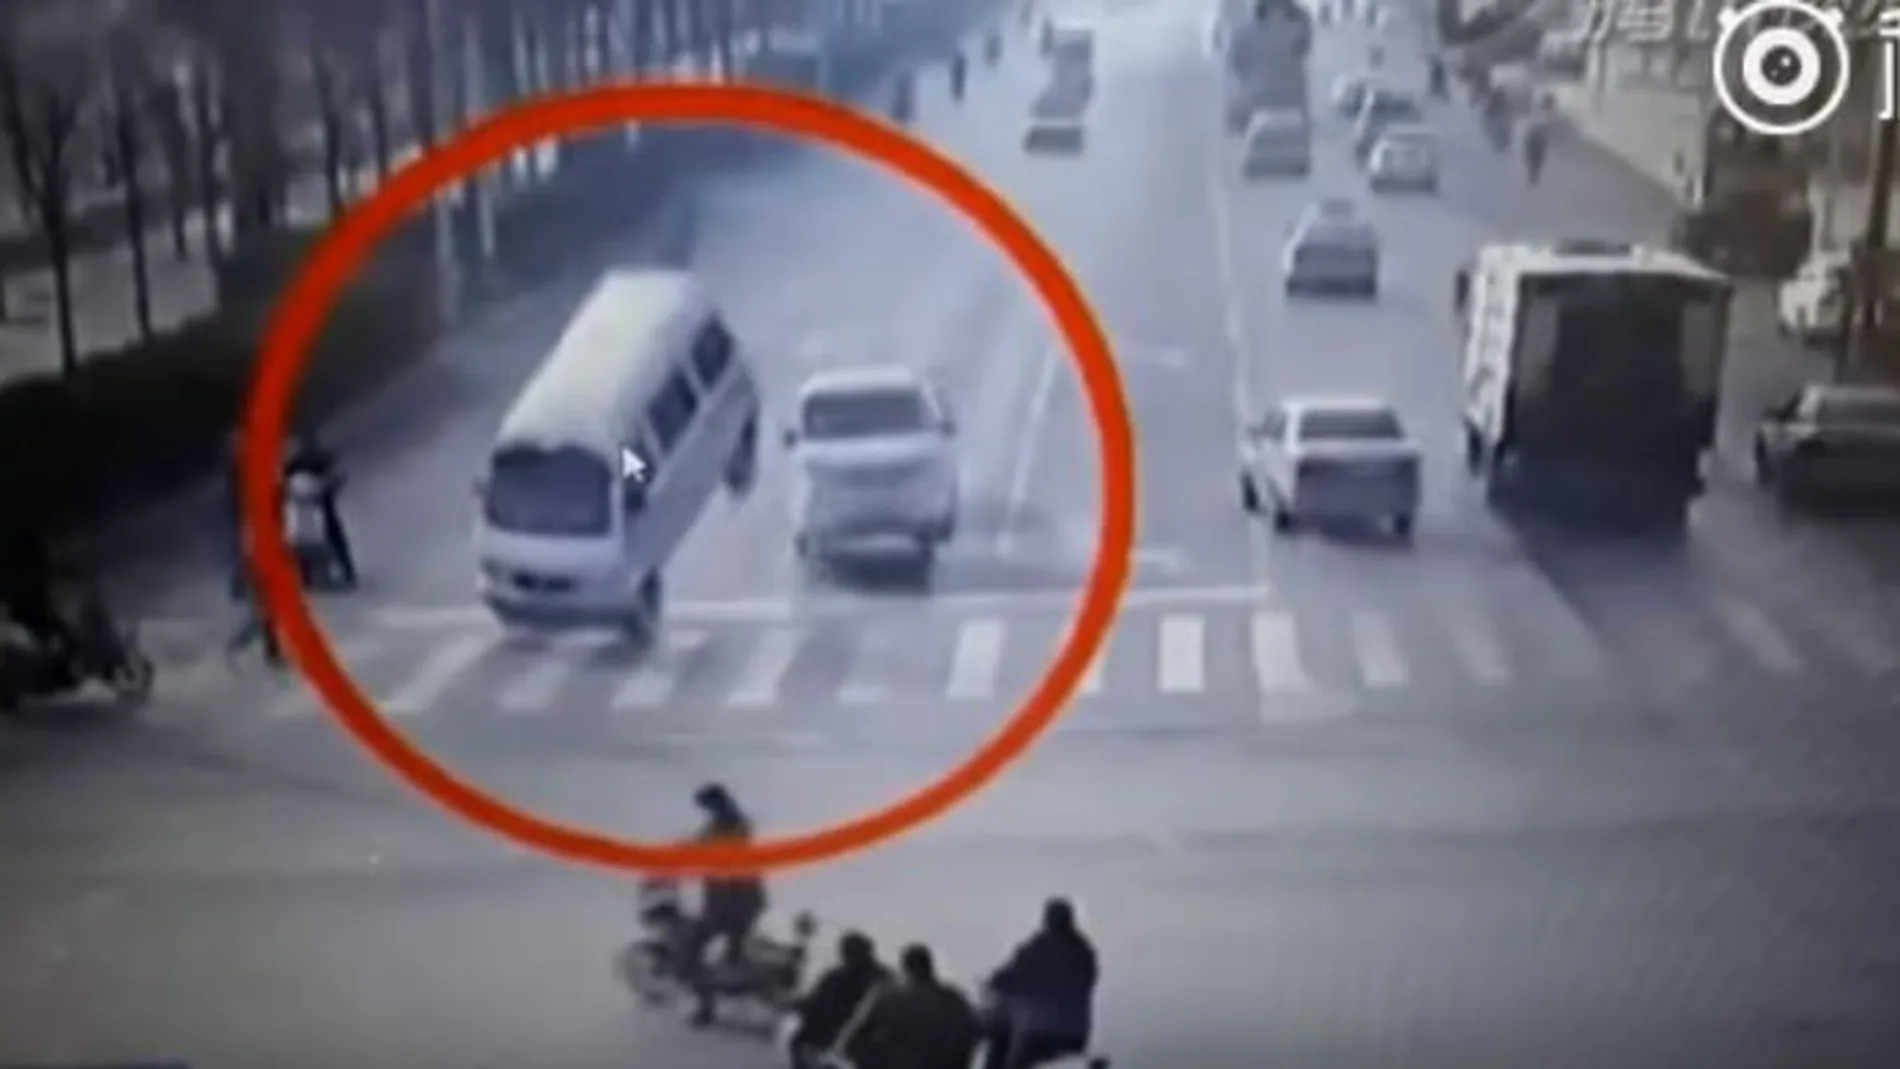 El misterioso vídeo de varios coches levitando desconcierta a los internautas